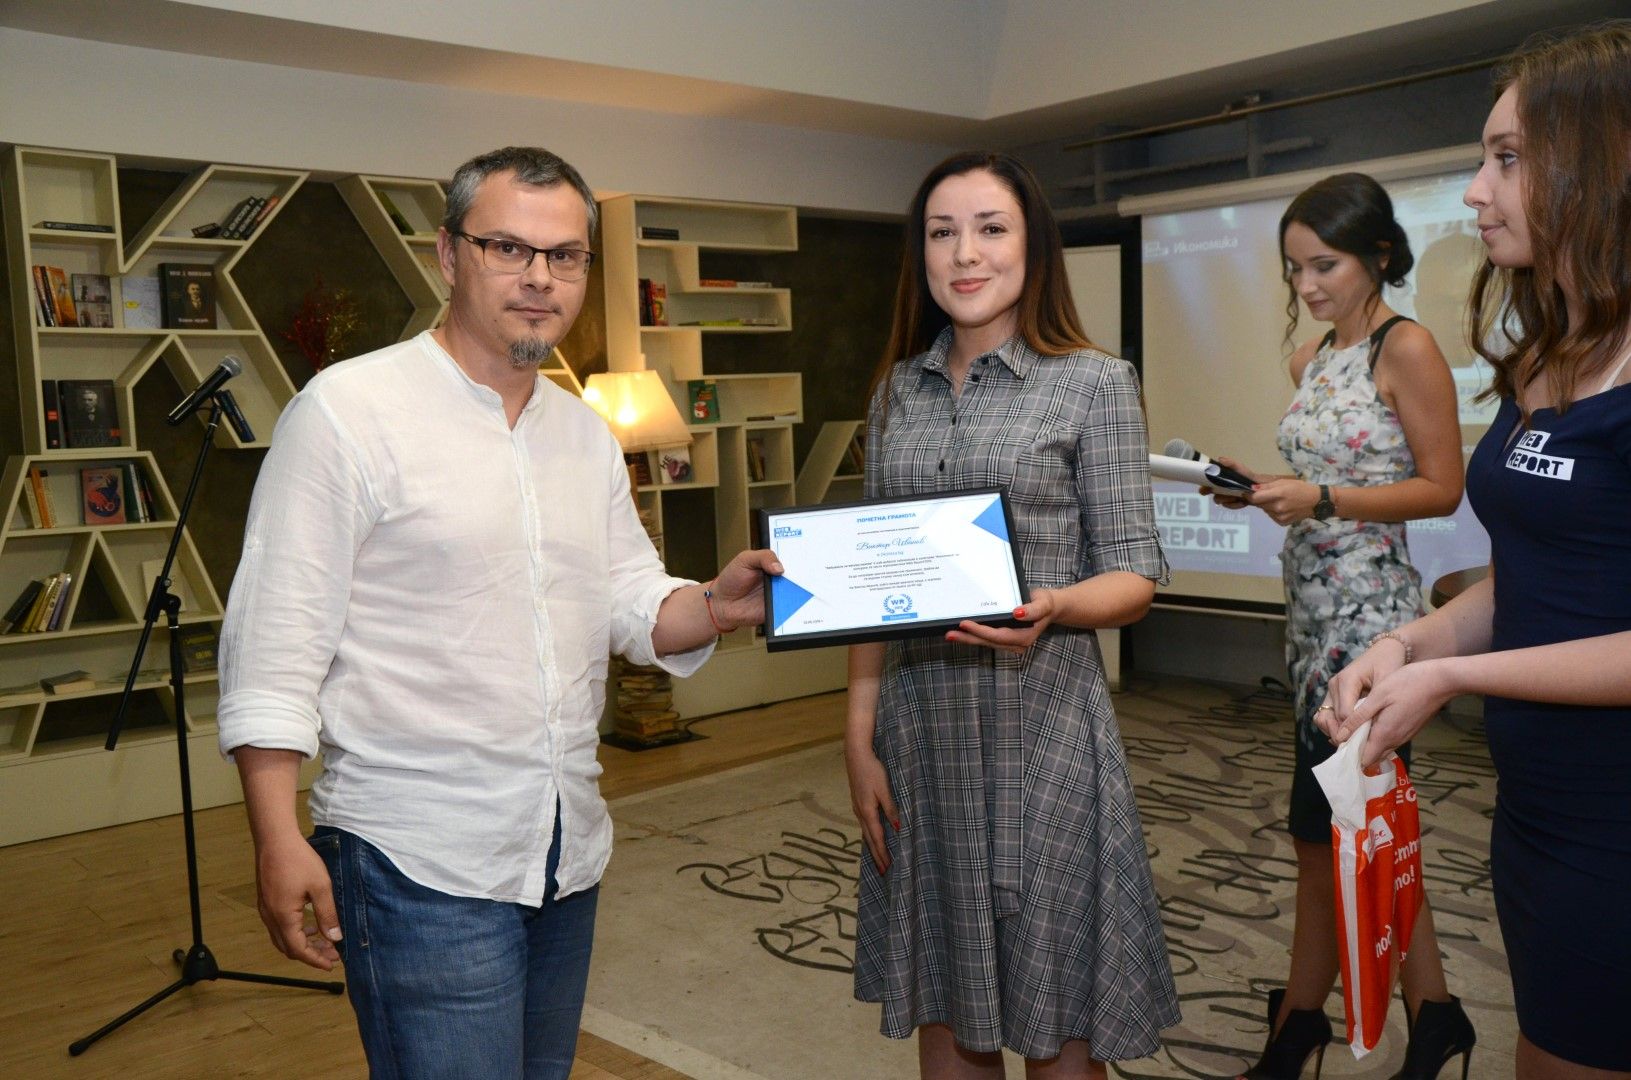 Виктор Иванов получи наградата в категория "Икономика" от Биляна Младенова, главен експерт "Връзки с обществеността" - Главболгарстрой Холдинг